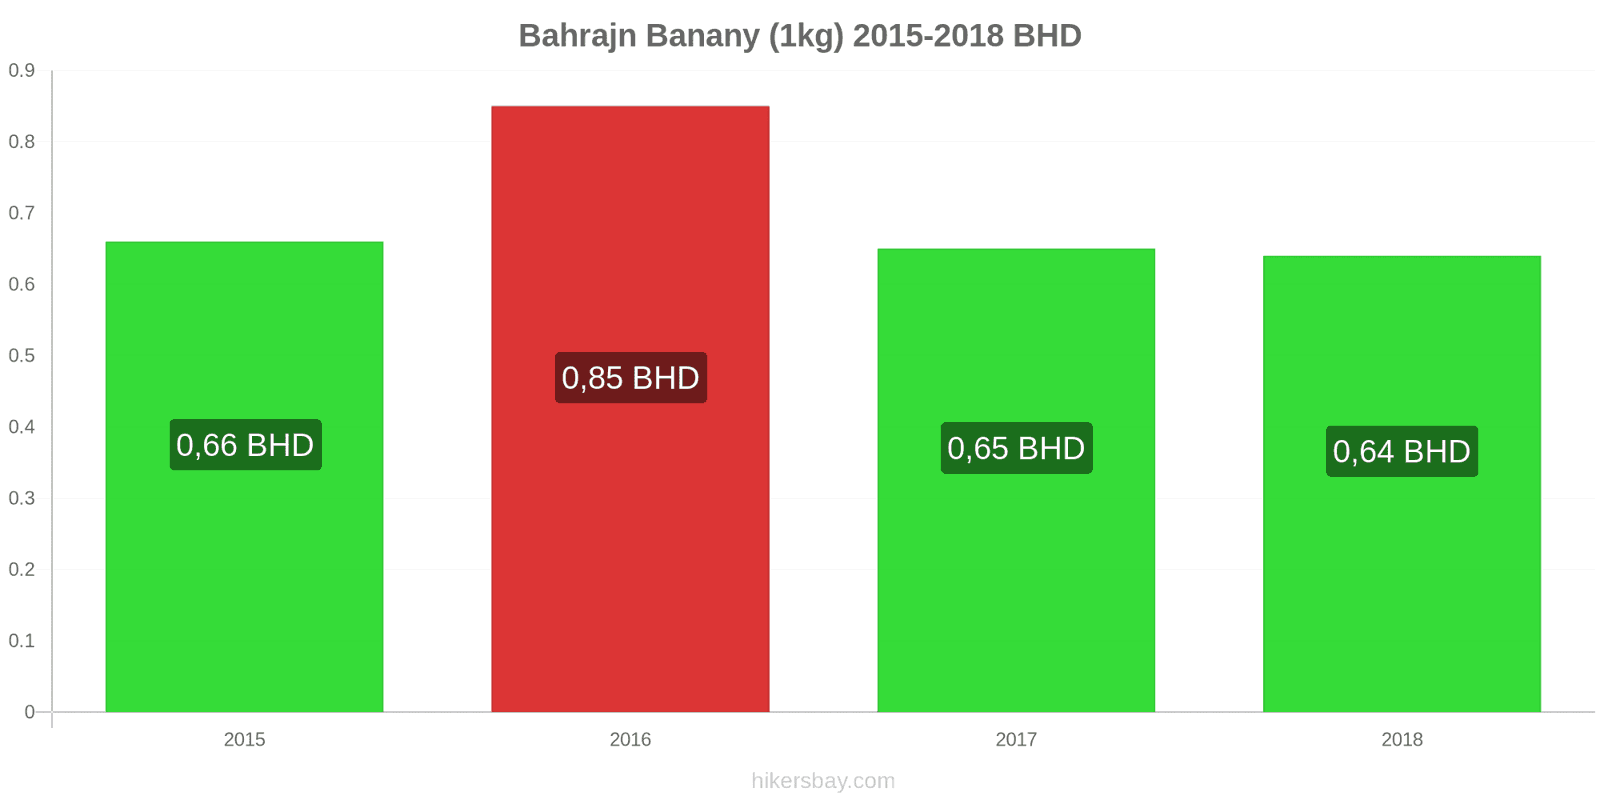 Bahrajn zmiany cen Banany (1kg) hikersbay.com